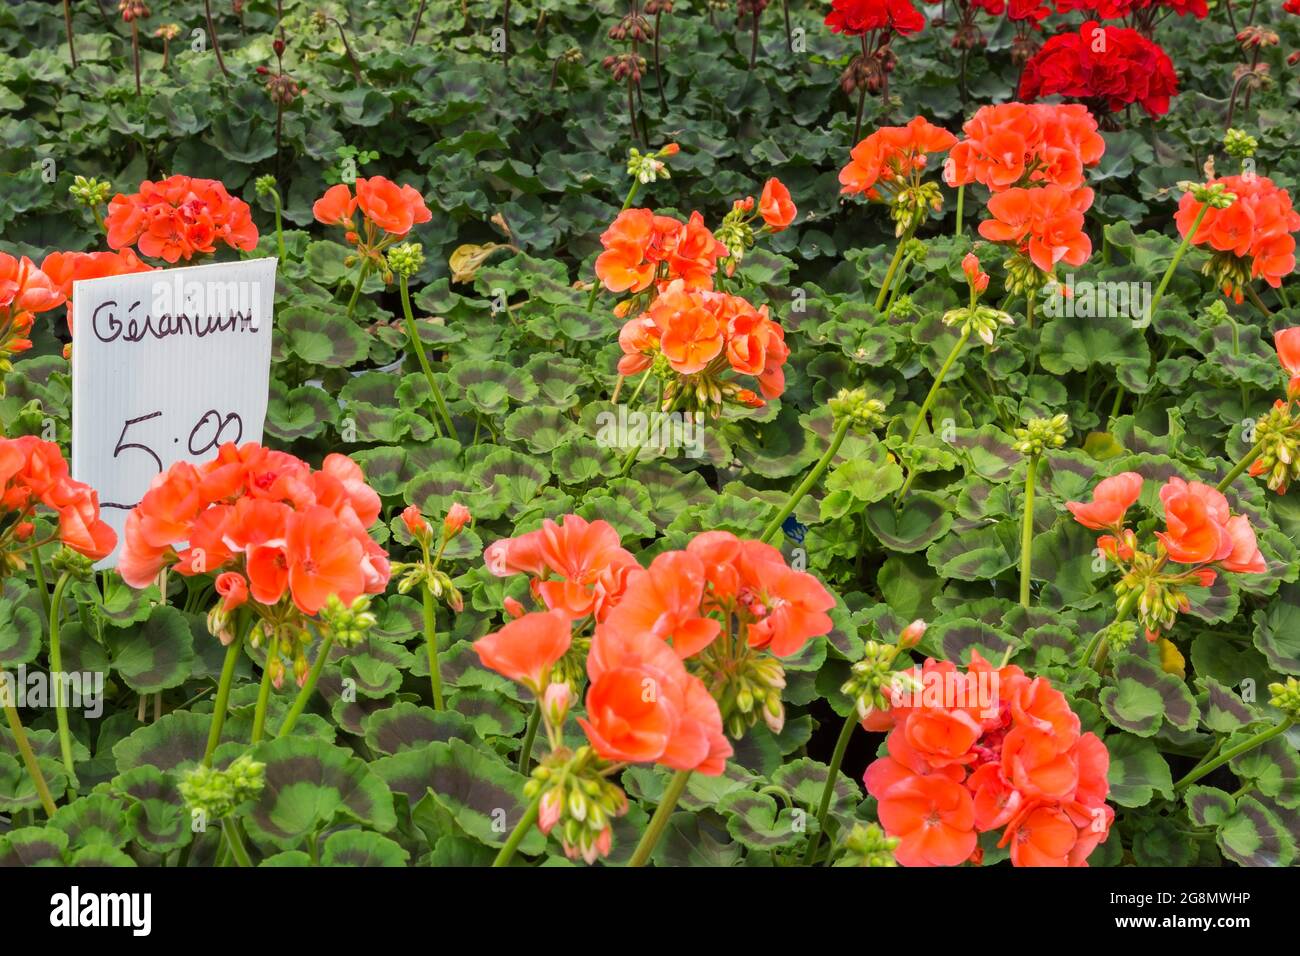 Signe manuscrit de langue française pour Pelargonium - Geranium fleurs en vente pour cinq dollars à l'intérieur d'une serre. Banque D'Images